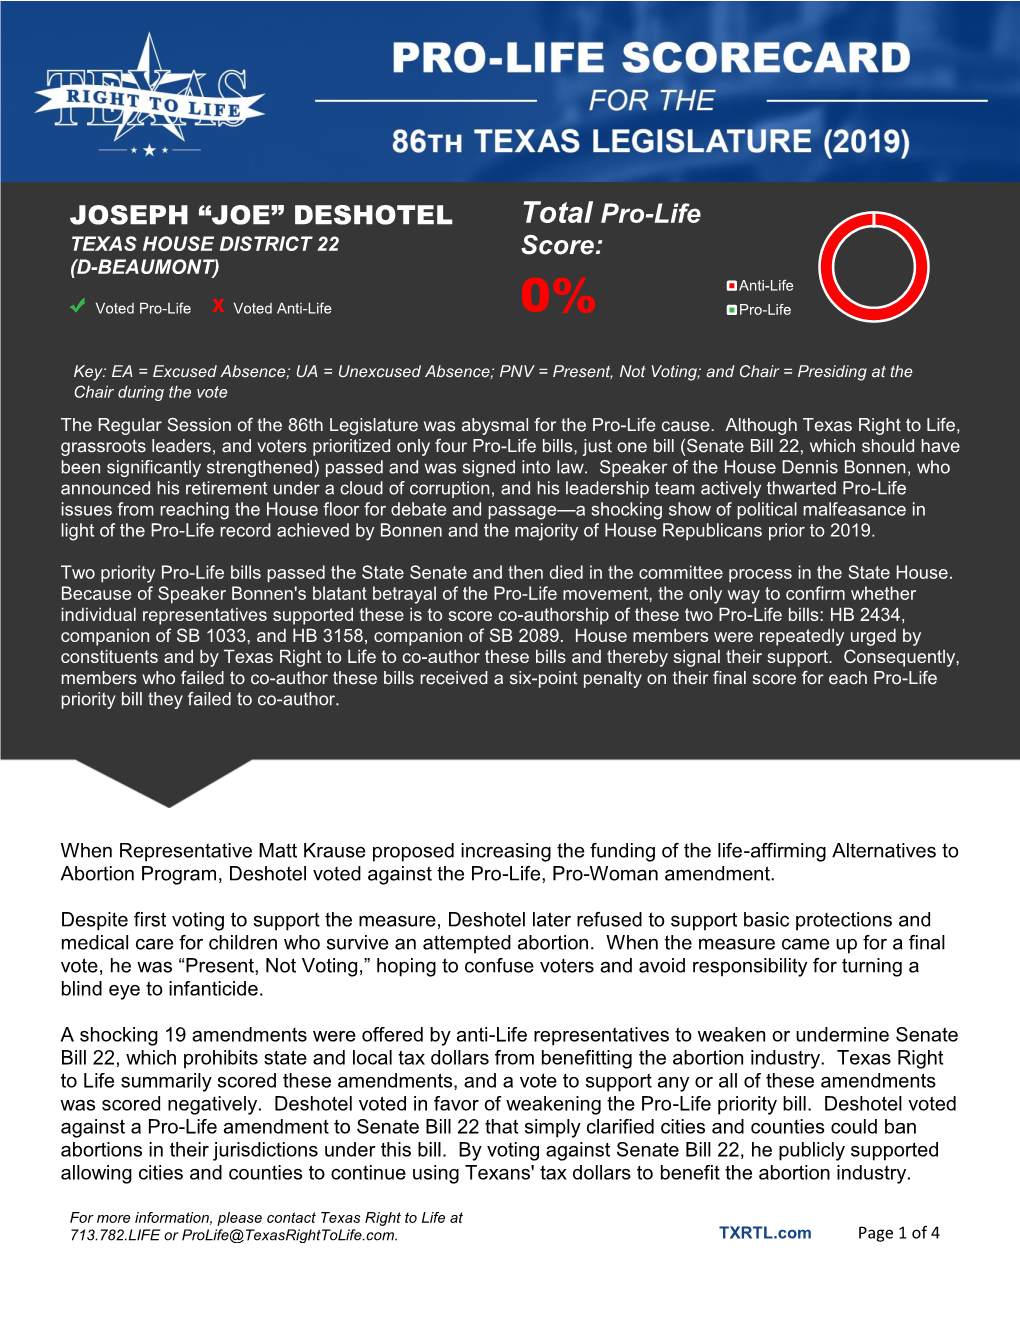 JOSEPH “JOE” DESHOTEL Total Pro-Life Score